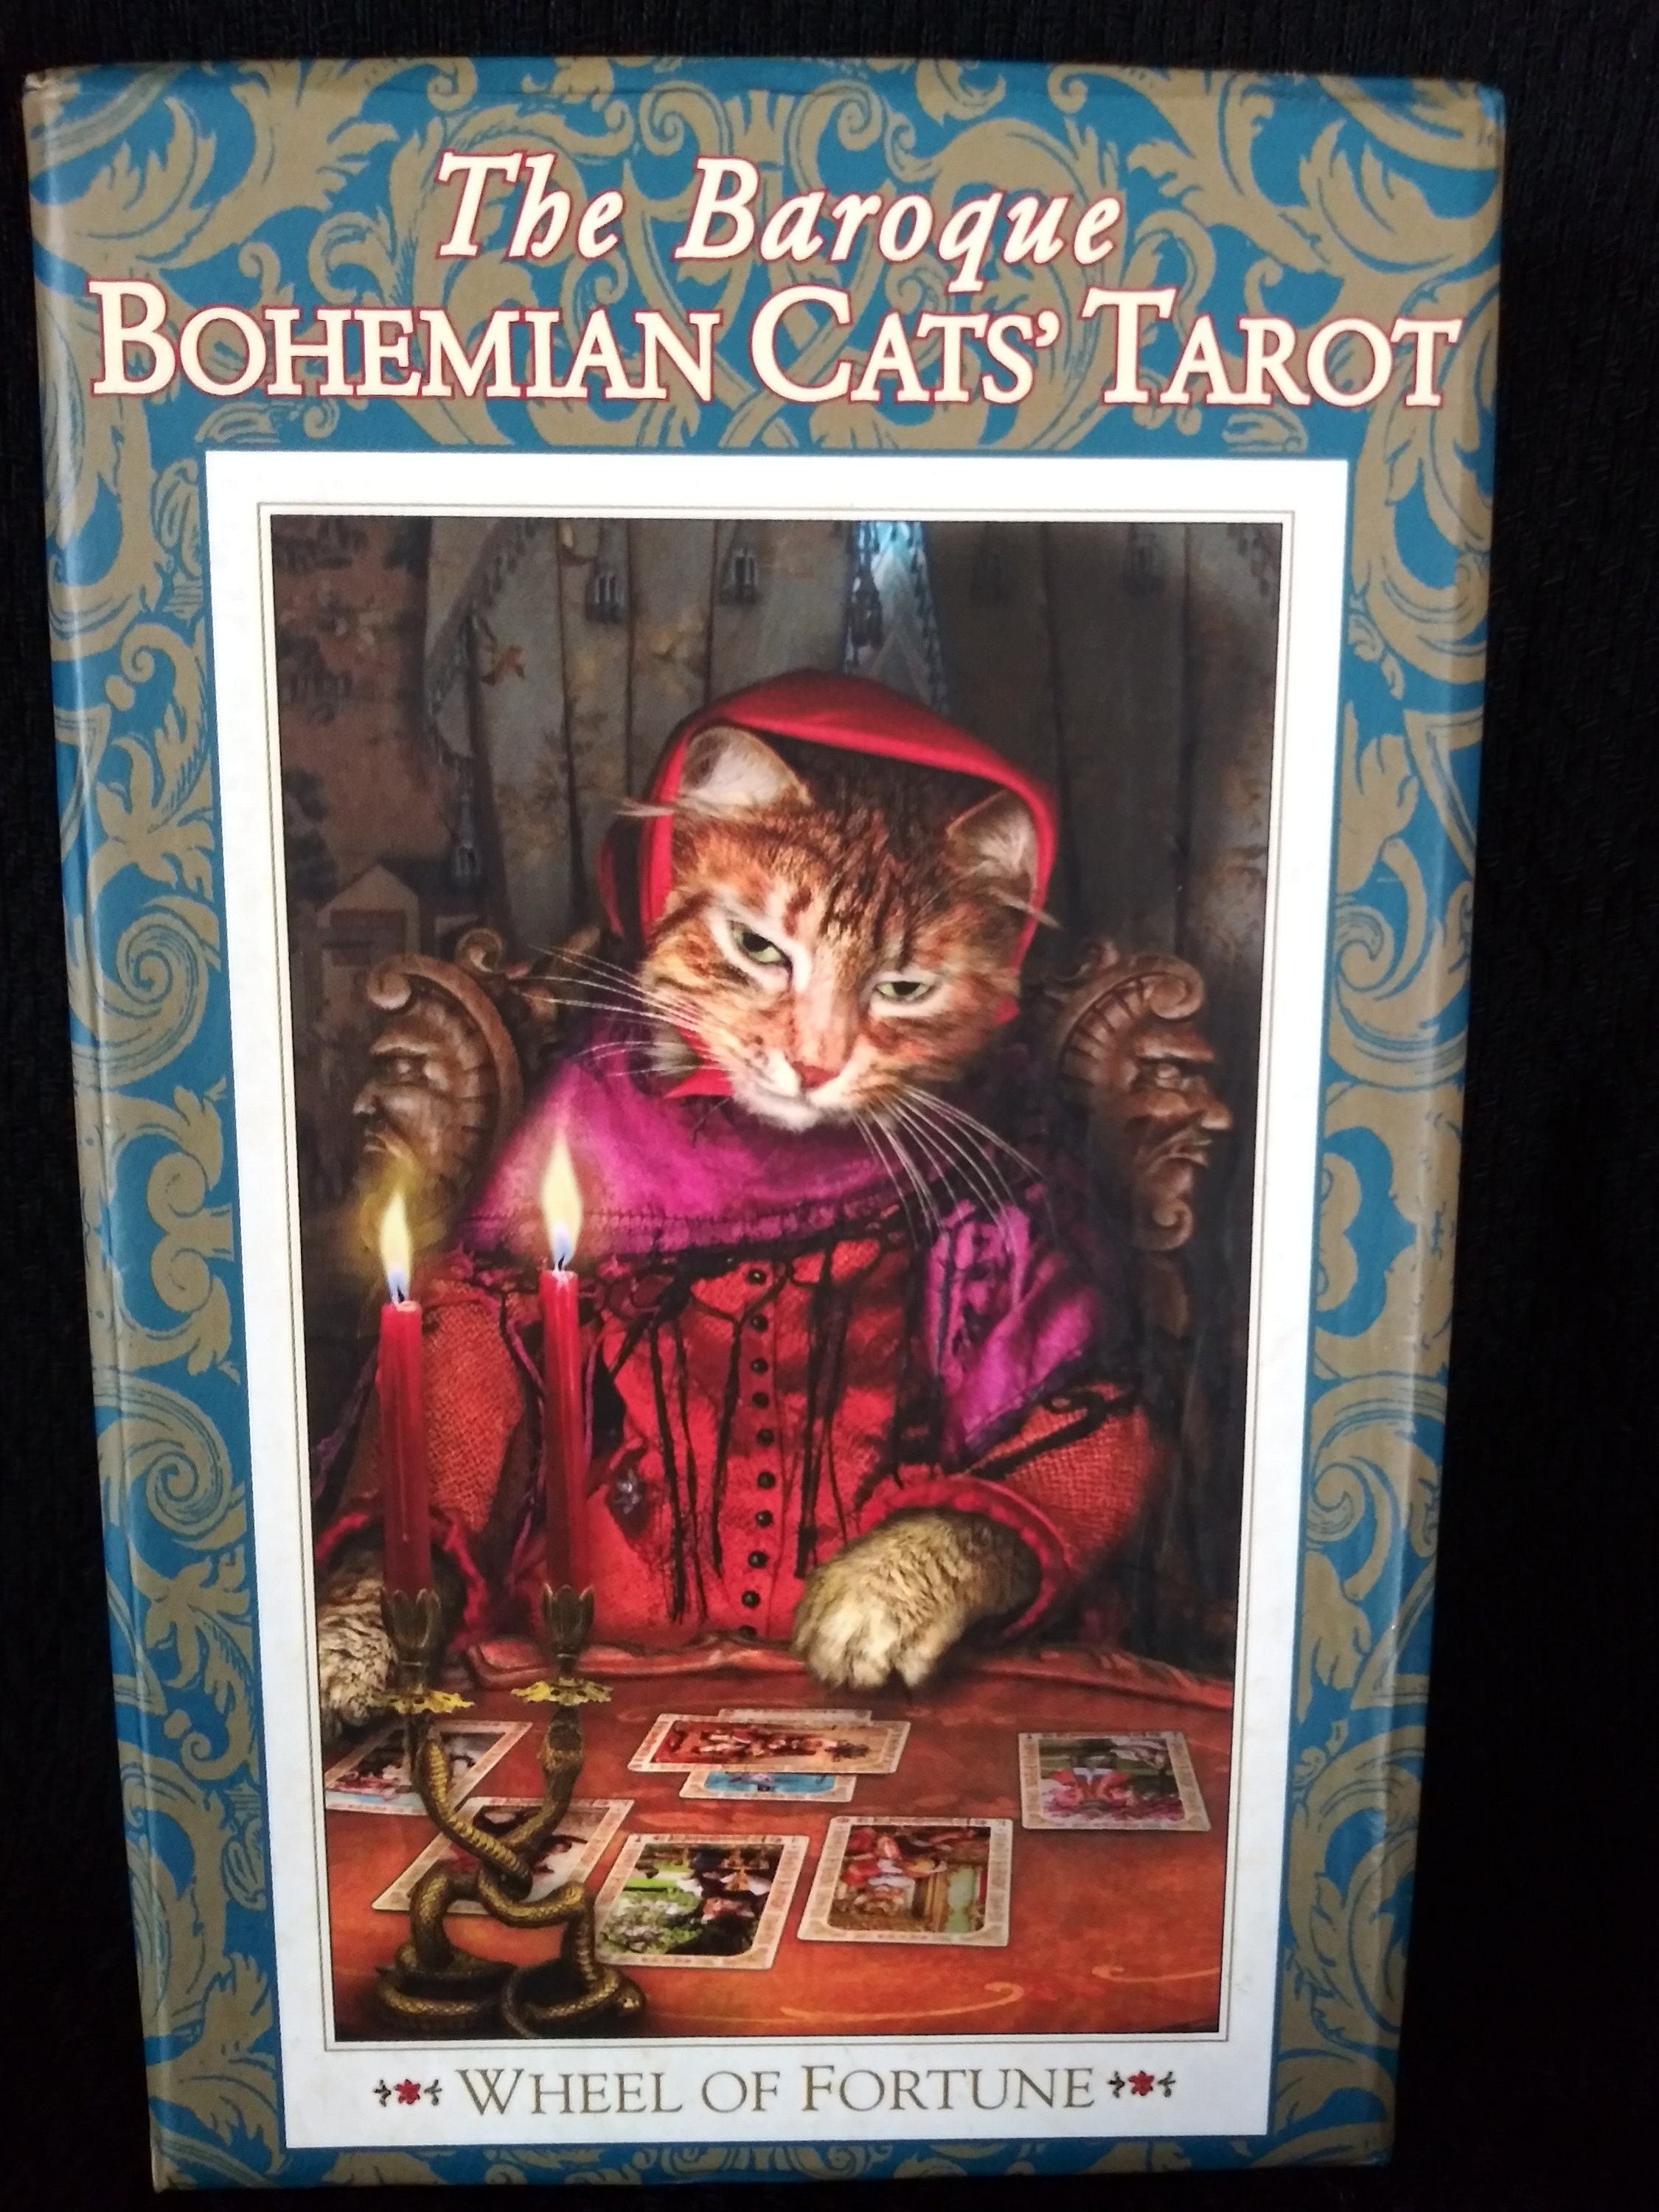 Baroque Bohemian Cats' Tarot Reviews at Aeclectic